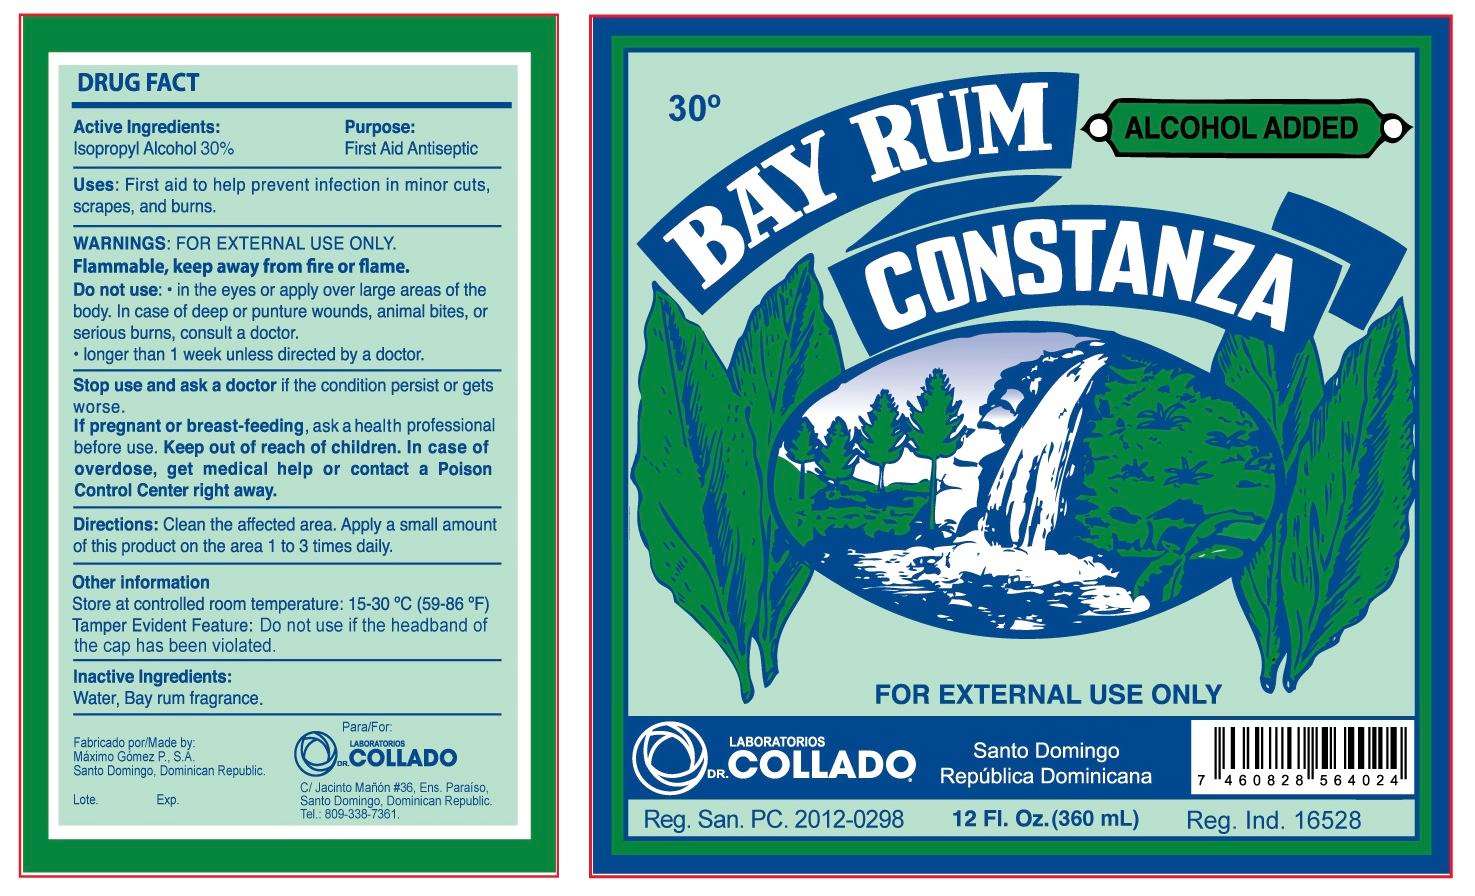 Bay Rum Constanza